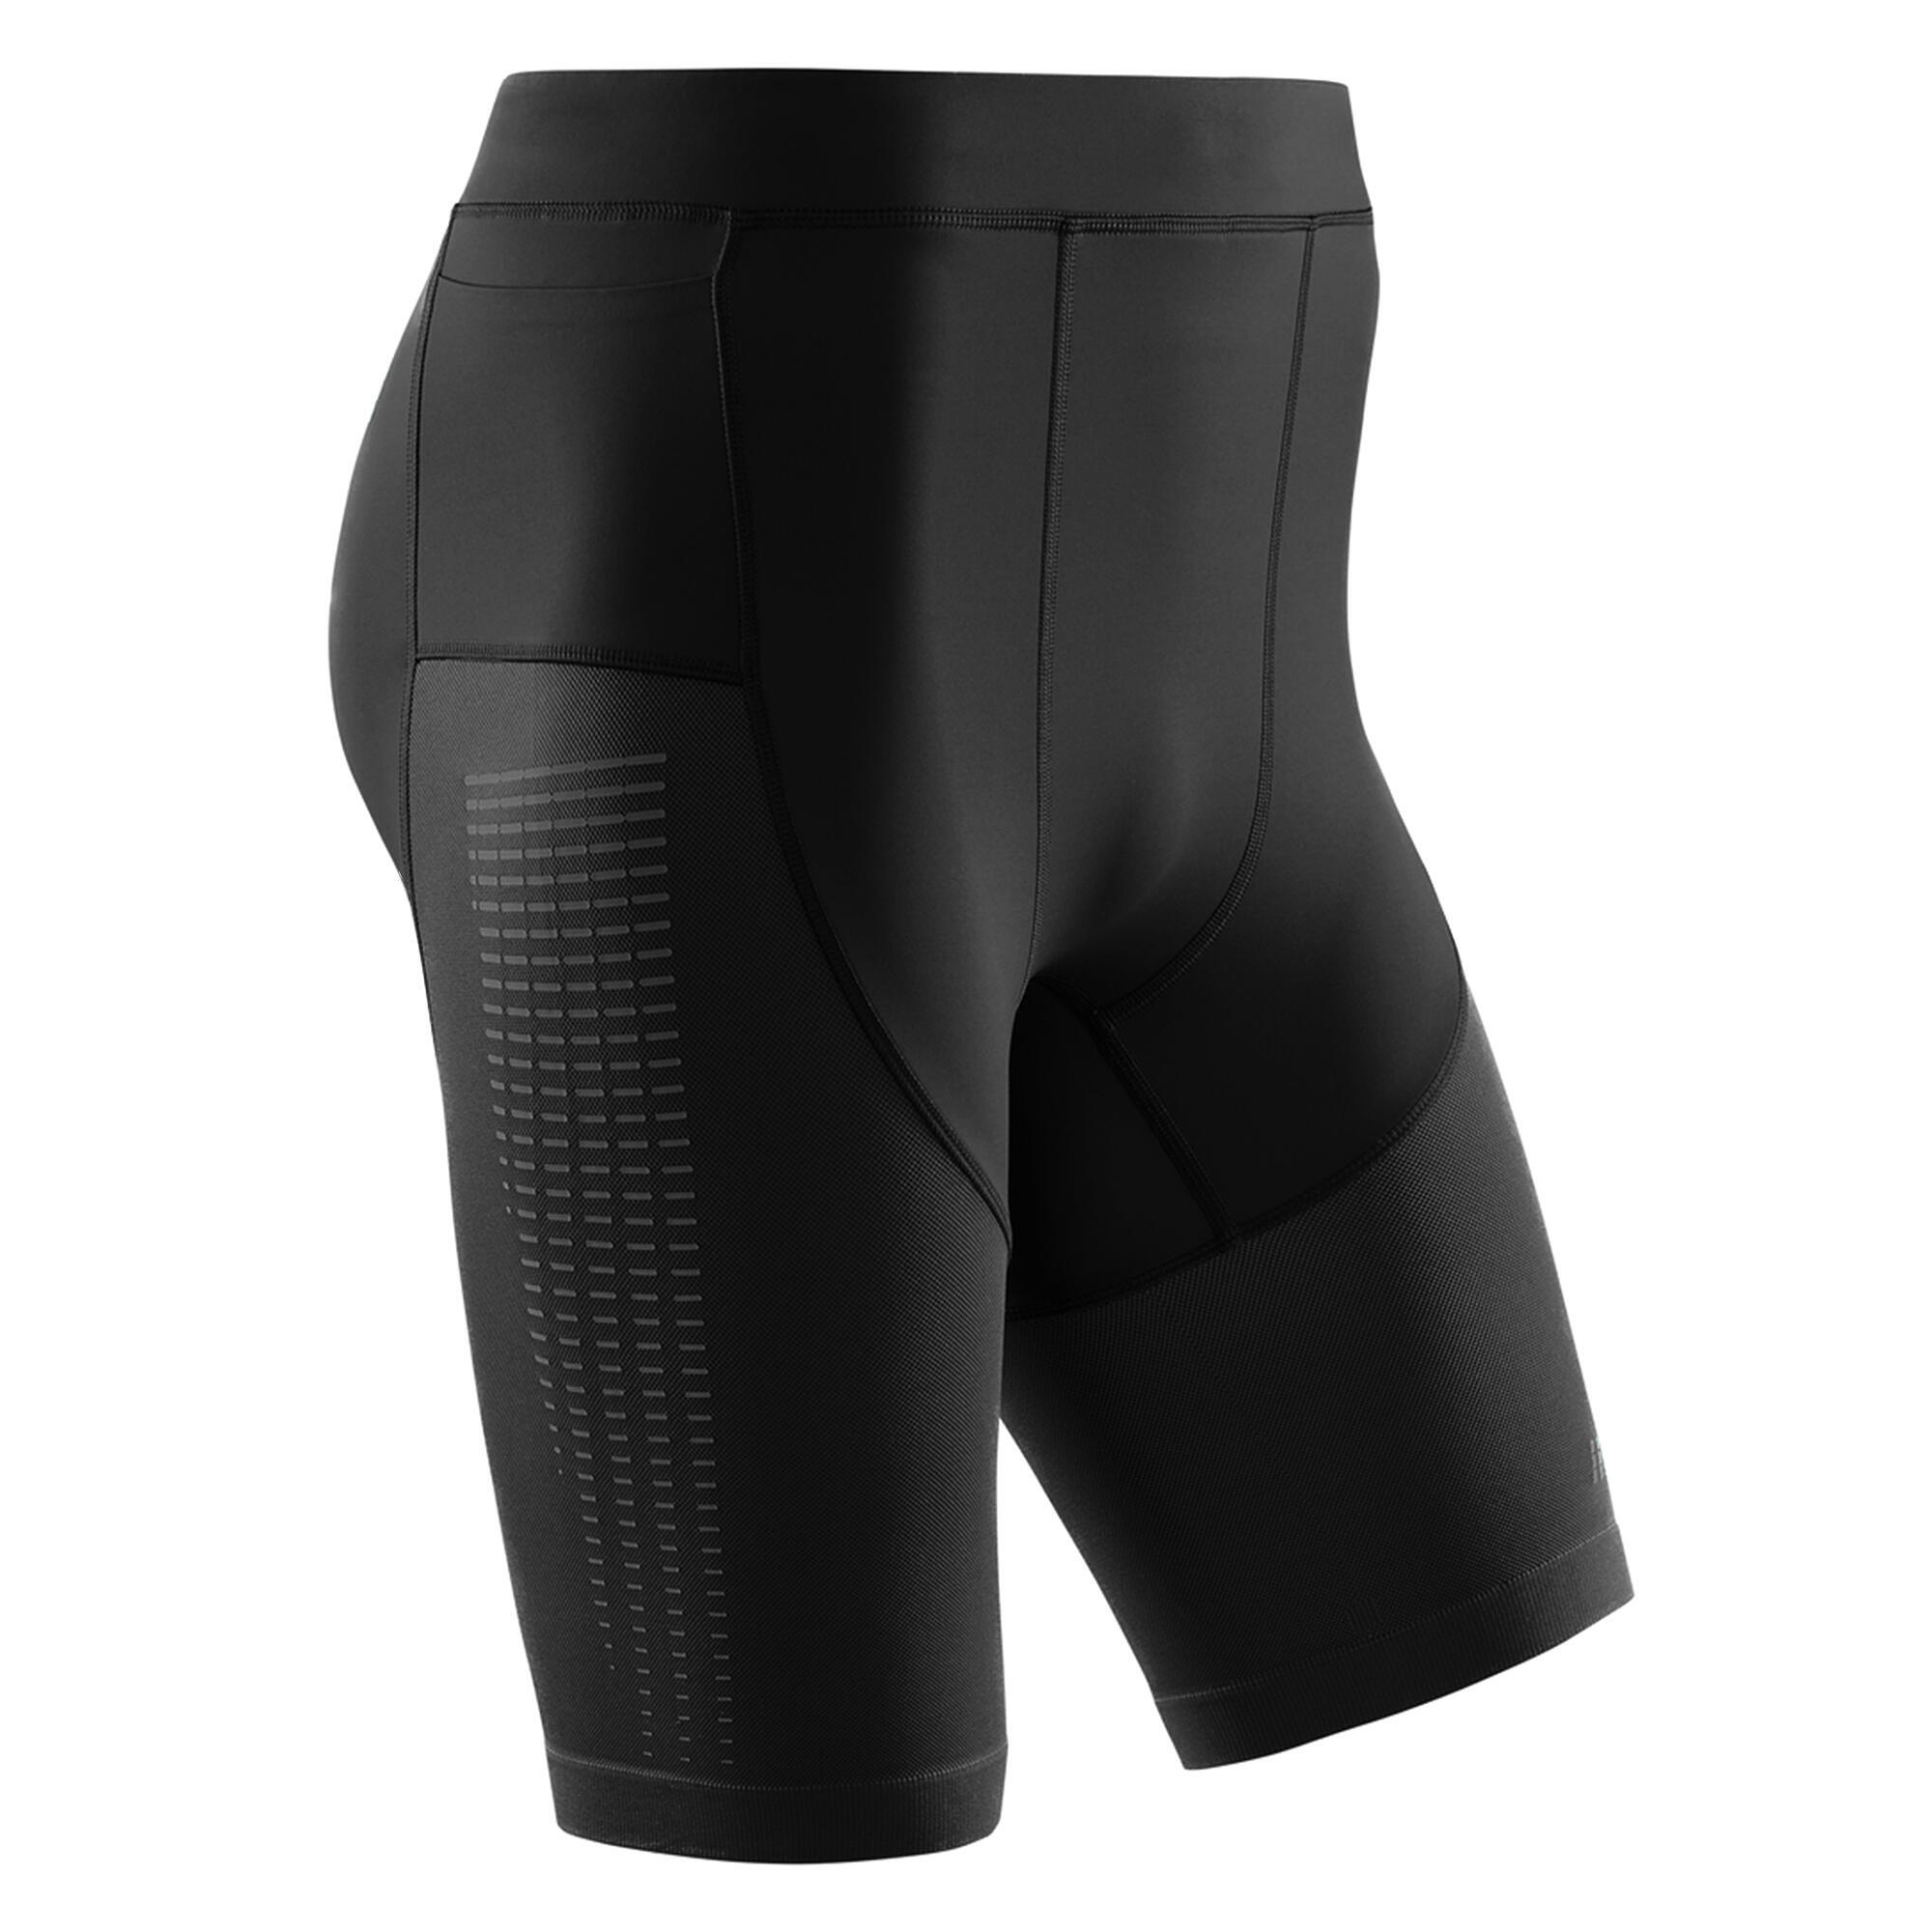 Шорты для бега Компрессионные шорты для бега 3.0 CEP, черный компрессионные шорты cep для бега женские